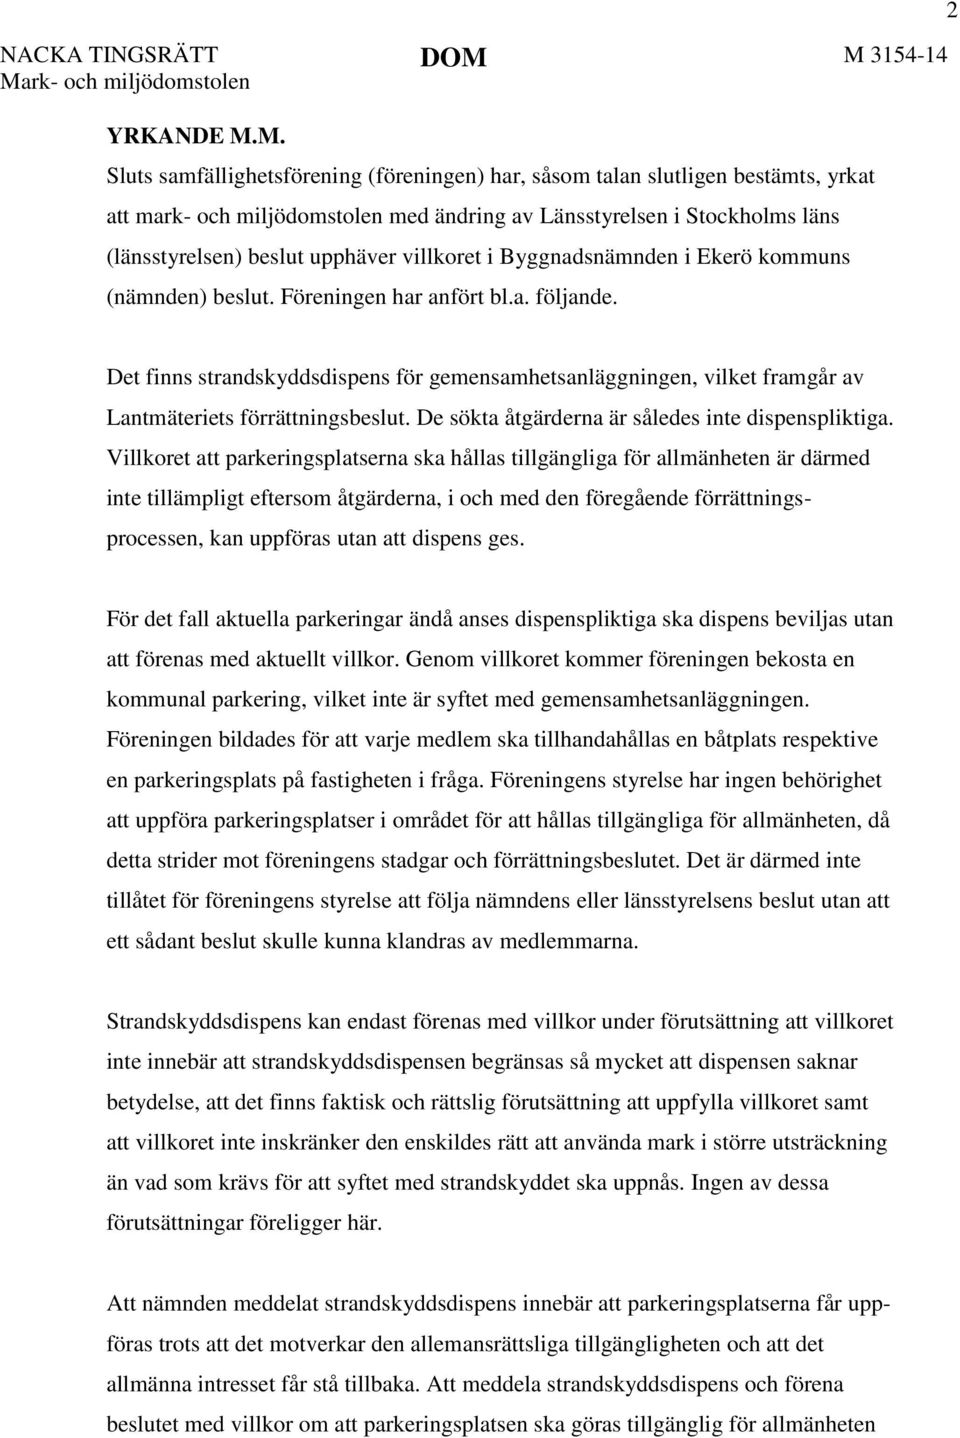 Stockholms läns (länsstyrelsen) beslut upphäver villkoret i Byggnadsnämnden i Ekerö kommuns (nämnden) beslut. Föreningen har anfört bl.a. följande.